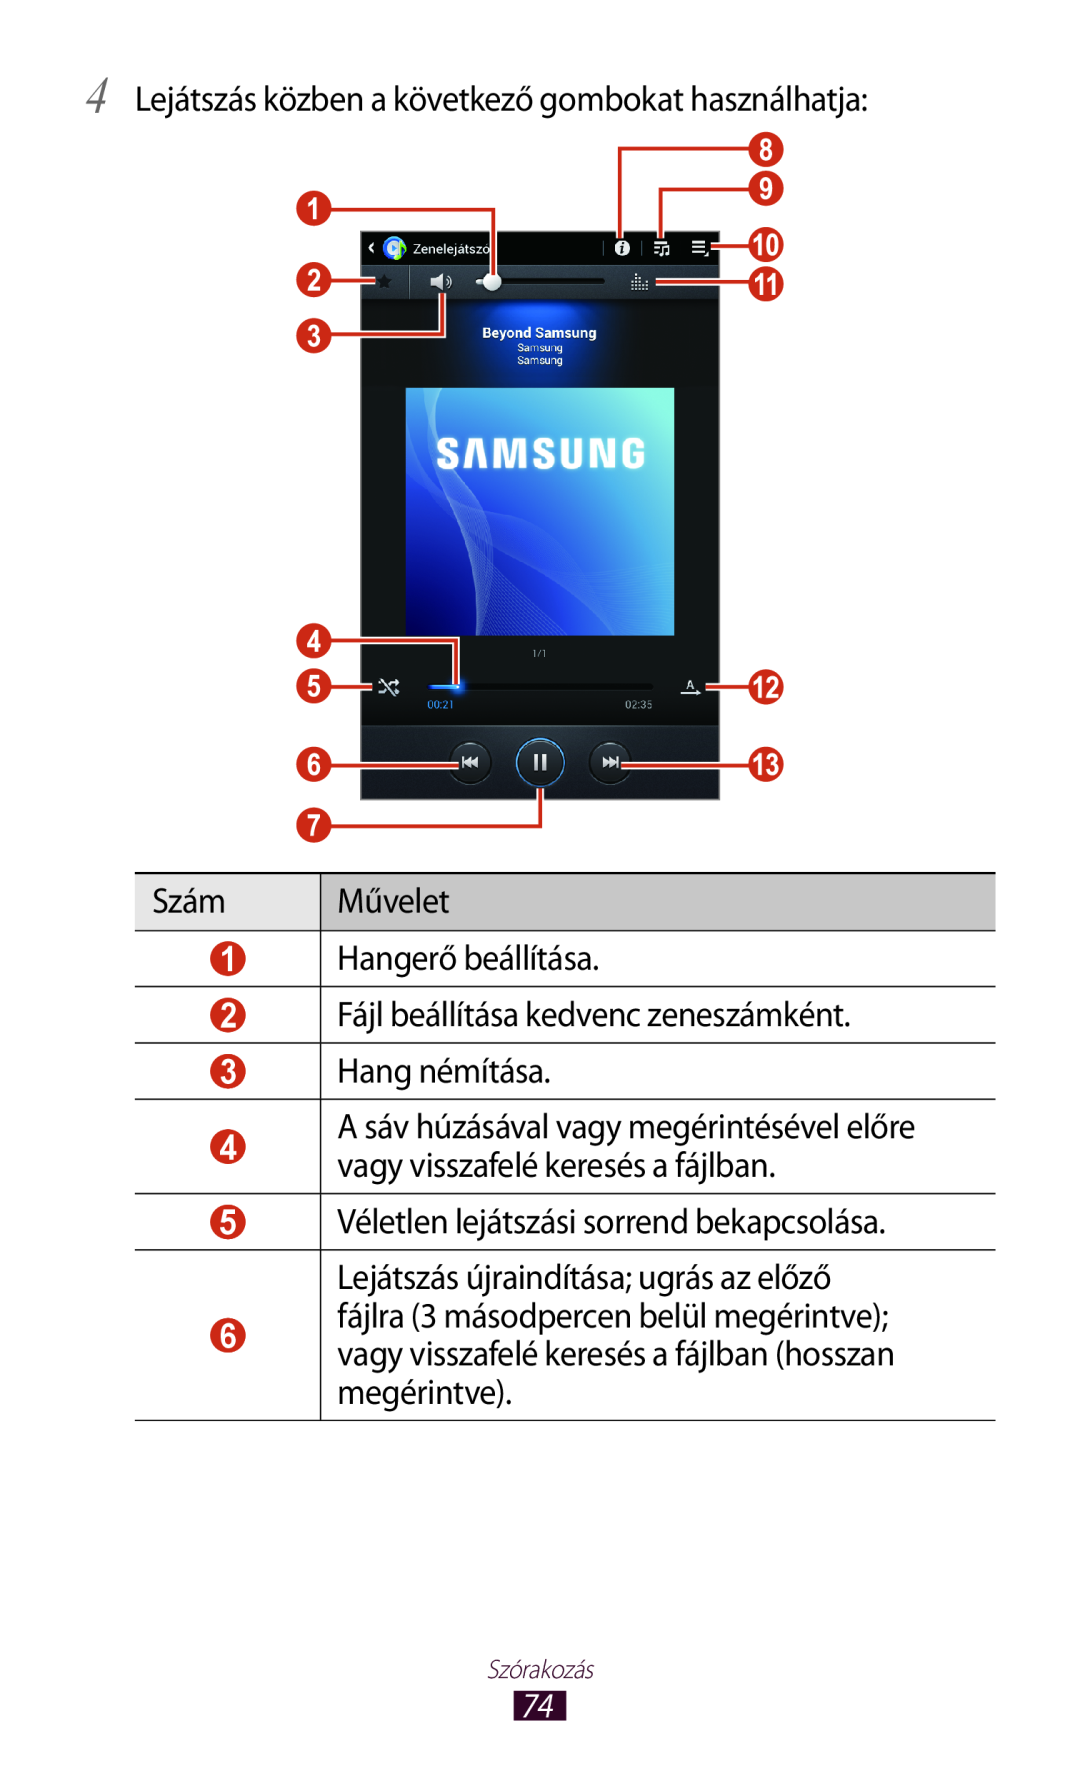 Samsung GT-P3110TSAATO 4 Lejátszás közben a következő gombokat használhatja, Szám, Művelet, Hang némítása, Szórakozás 